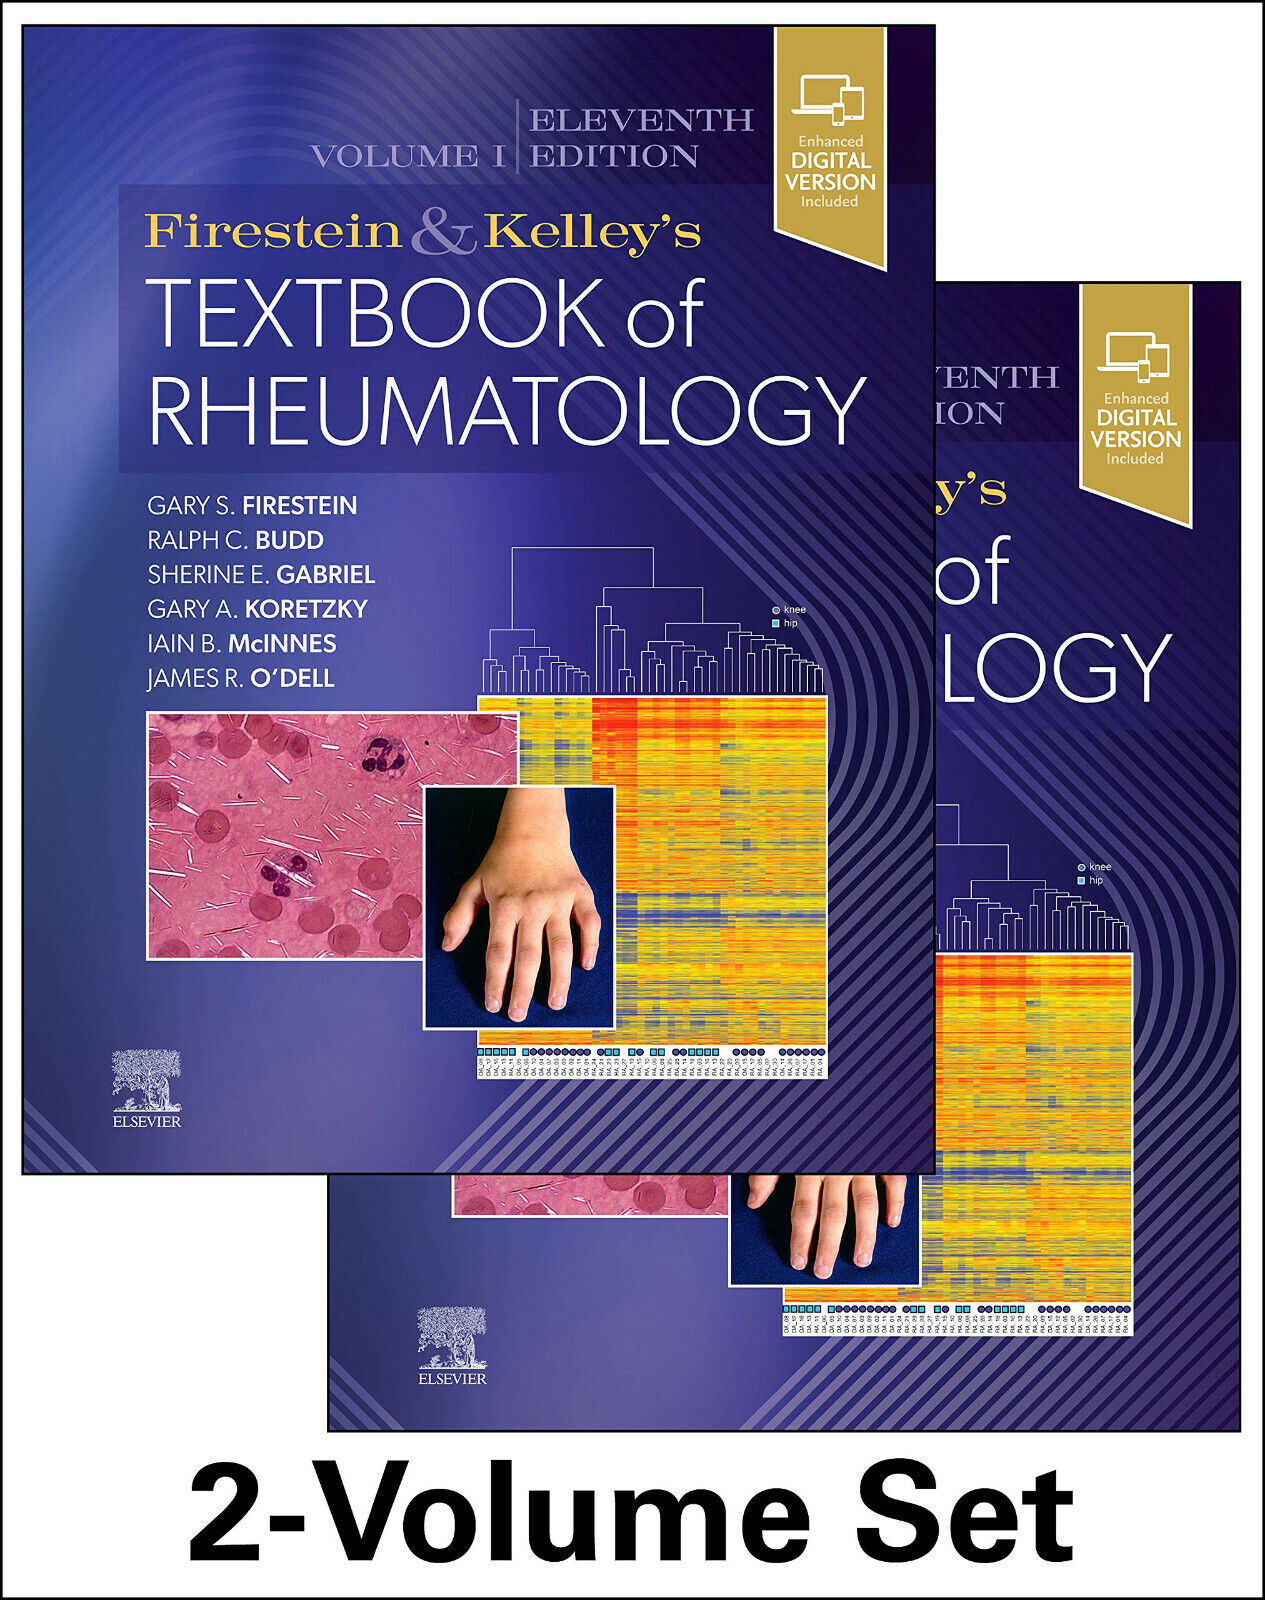 Firestein & Kelley's Textbook of Rheumatology - Elsevier - 2020